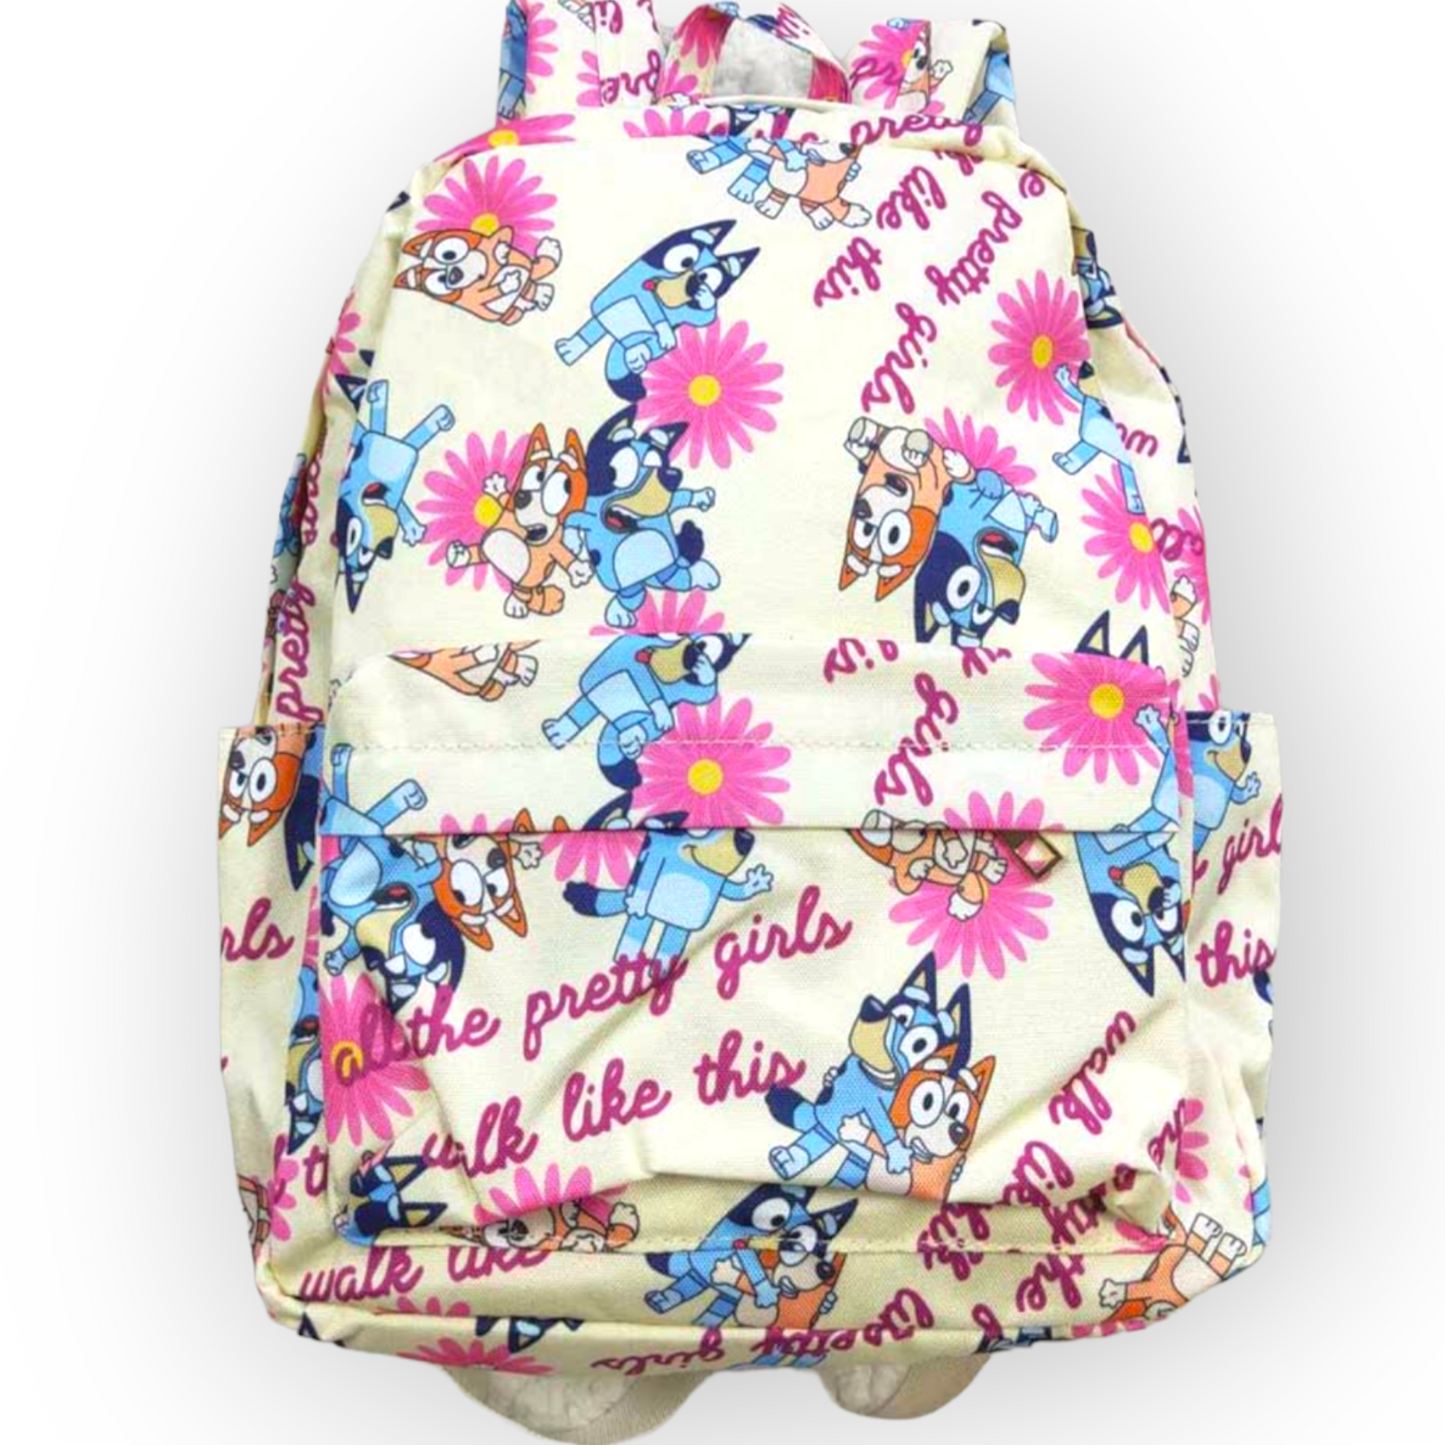 Bluey backpack "pretty girls walk like this"